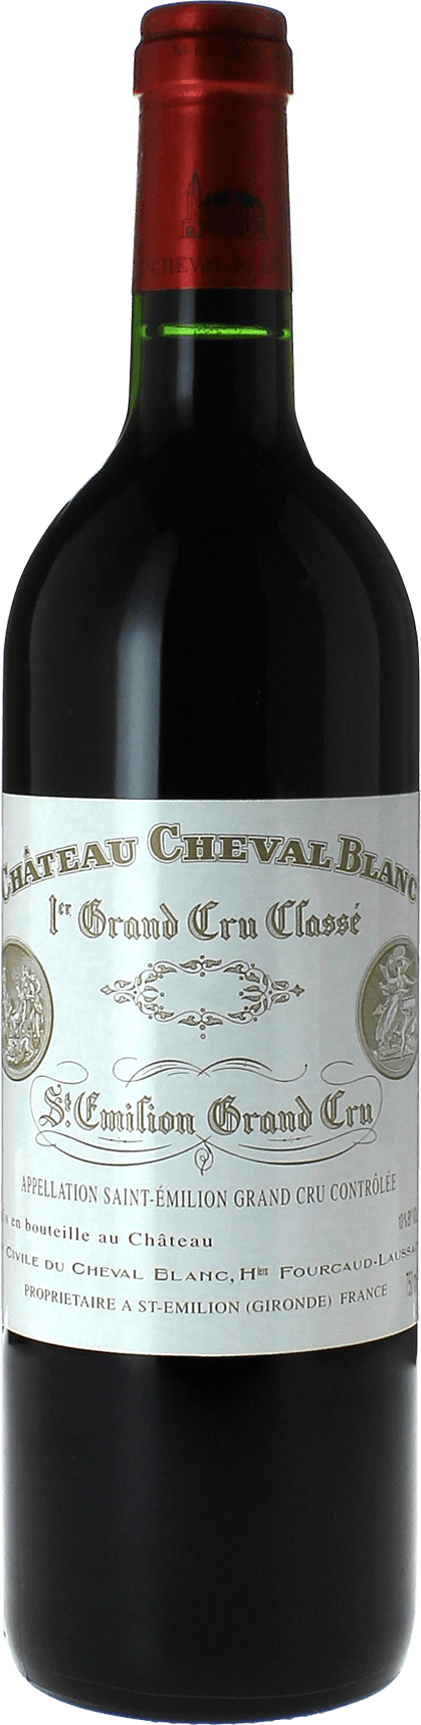 Cheval blanc 2000 1er Grand cru class A Saint-Emilion, Bordeaux rouge